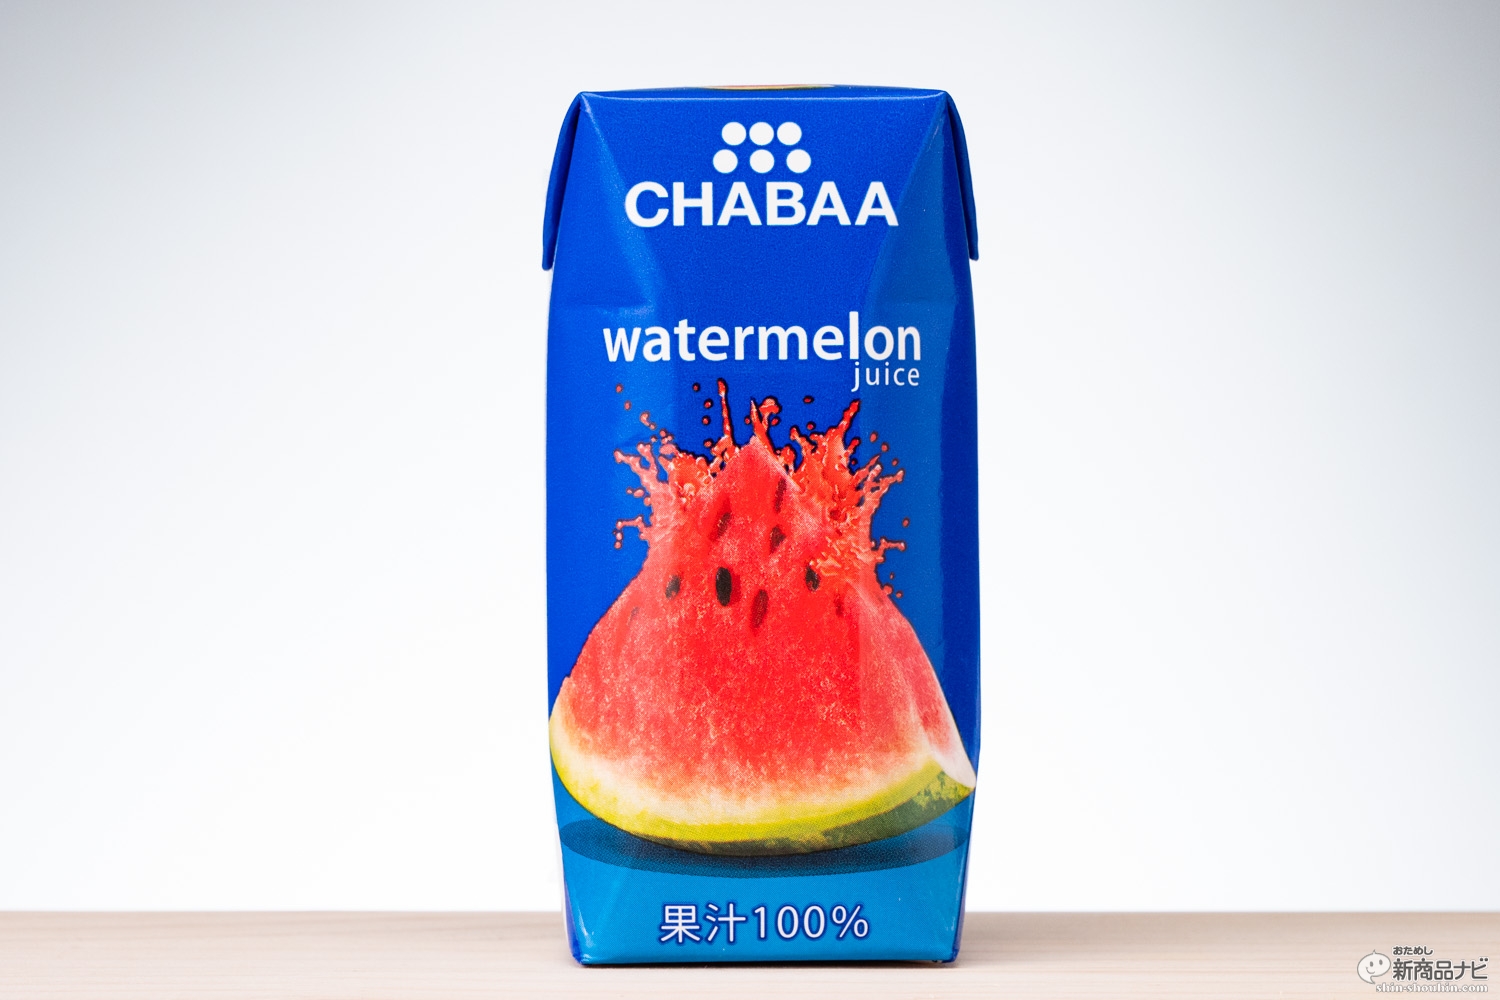 おためし新商品ナビ » Blog Archive » Suicaじゃありませんスイカです！『CHABAA 果汁100％ ウォーターメロンジュース 』で爽快感を持ち歩き！